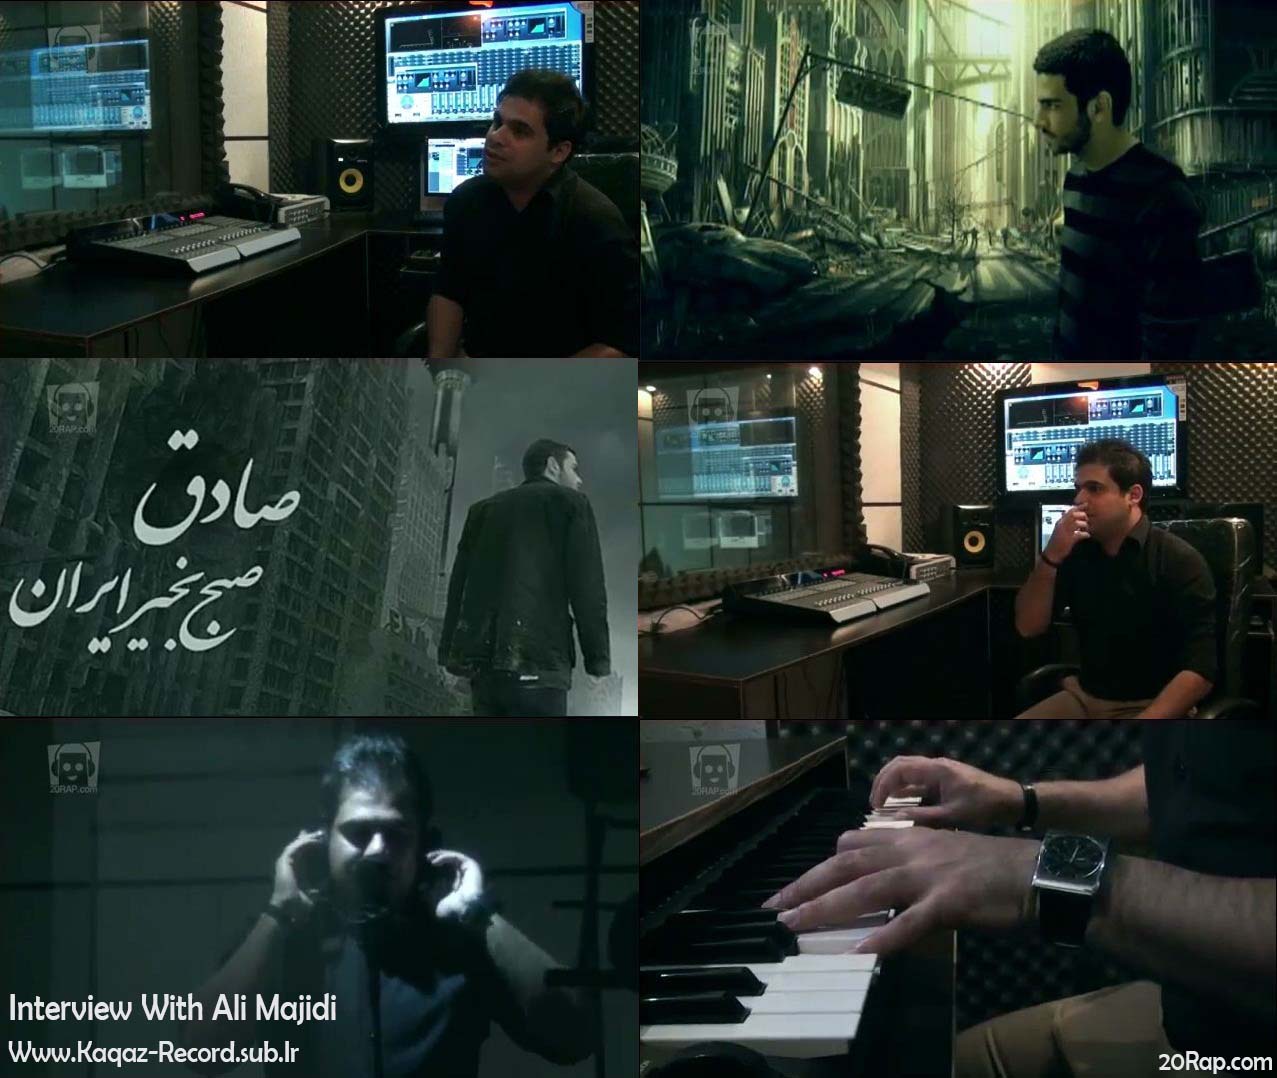 مصاحبه با علی مجیدی - Interview With Ali Majidi